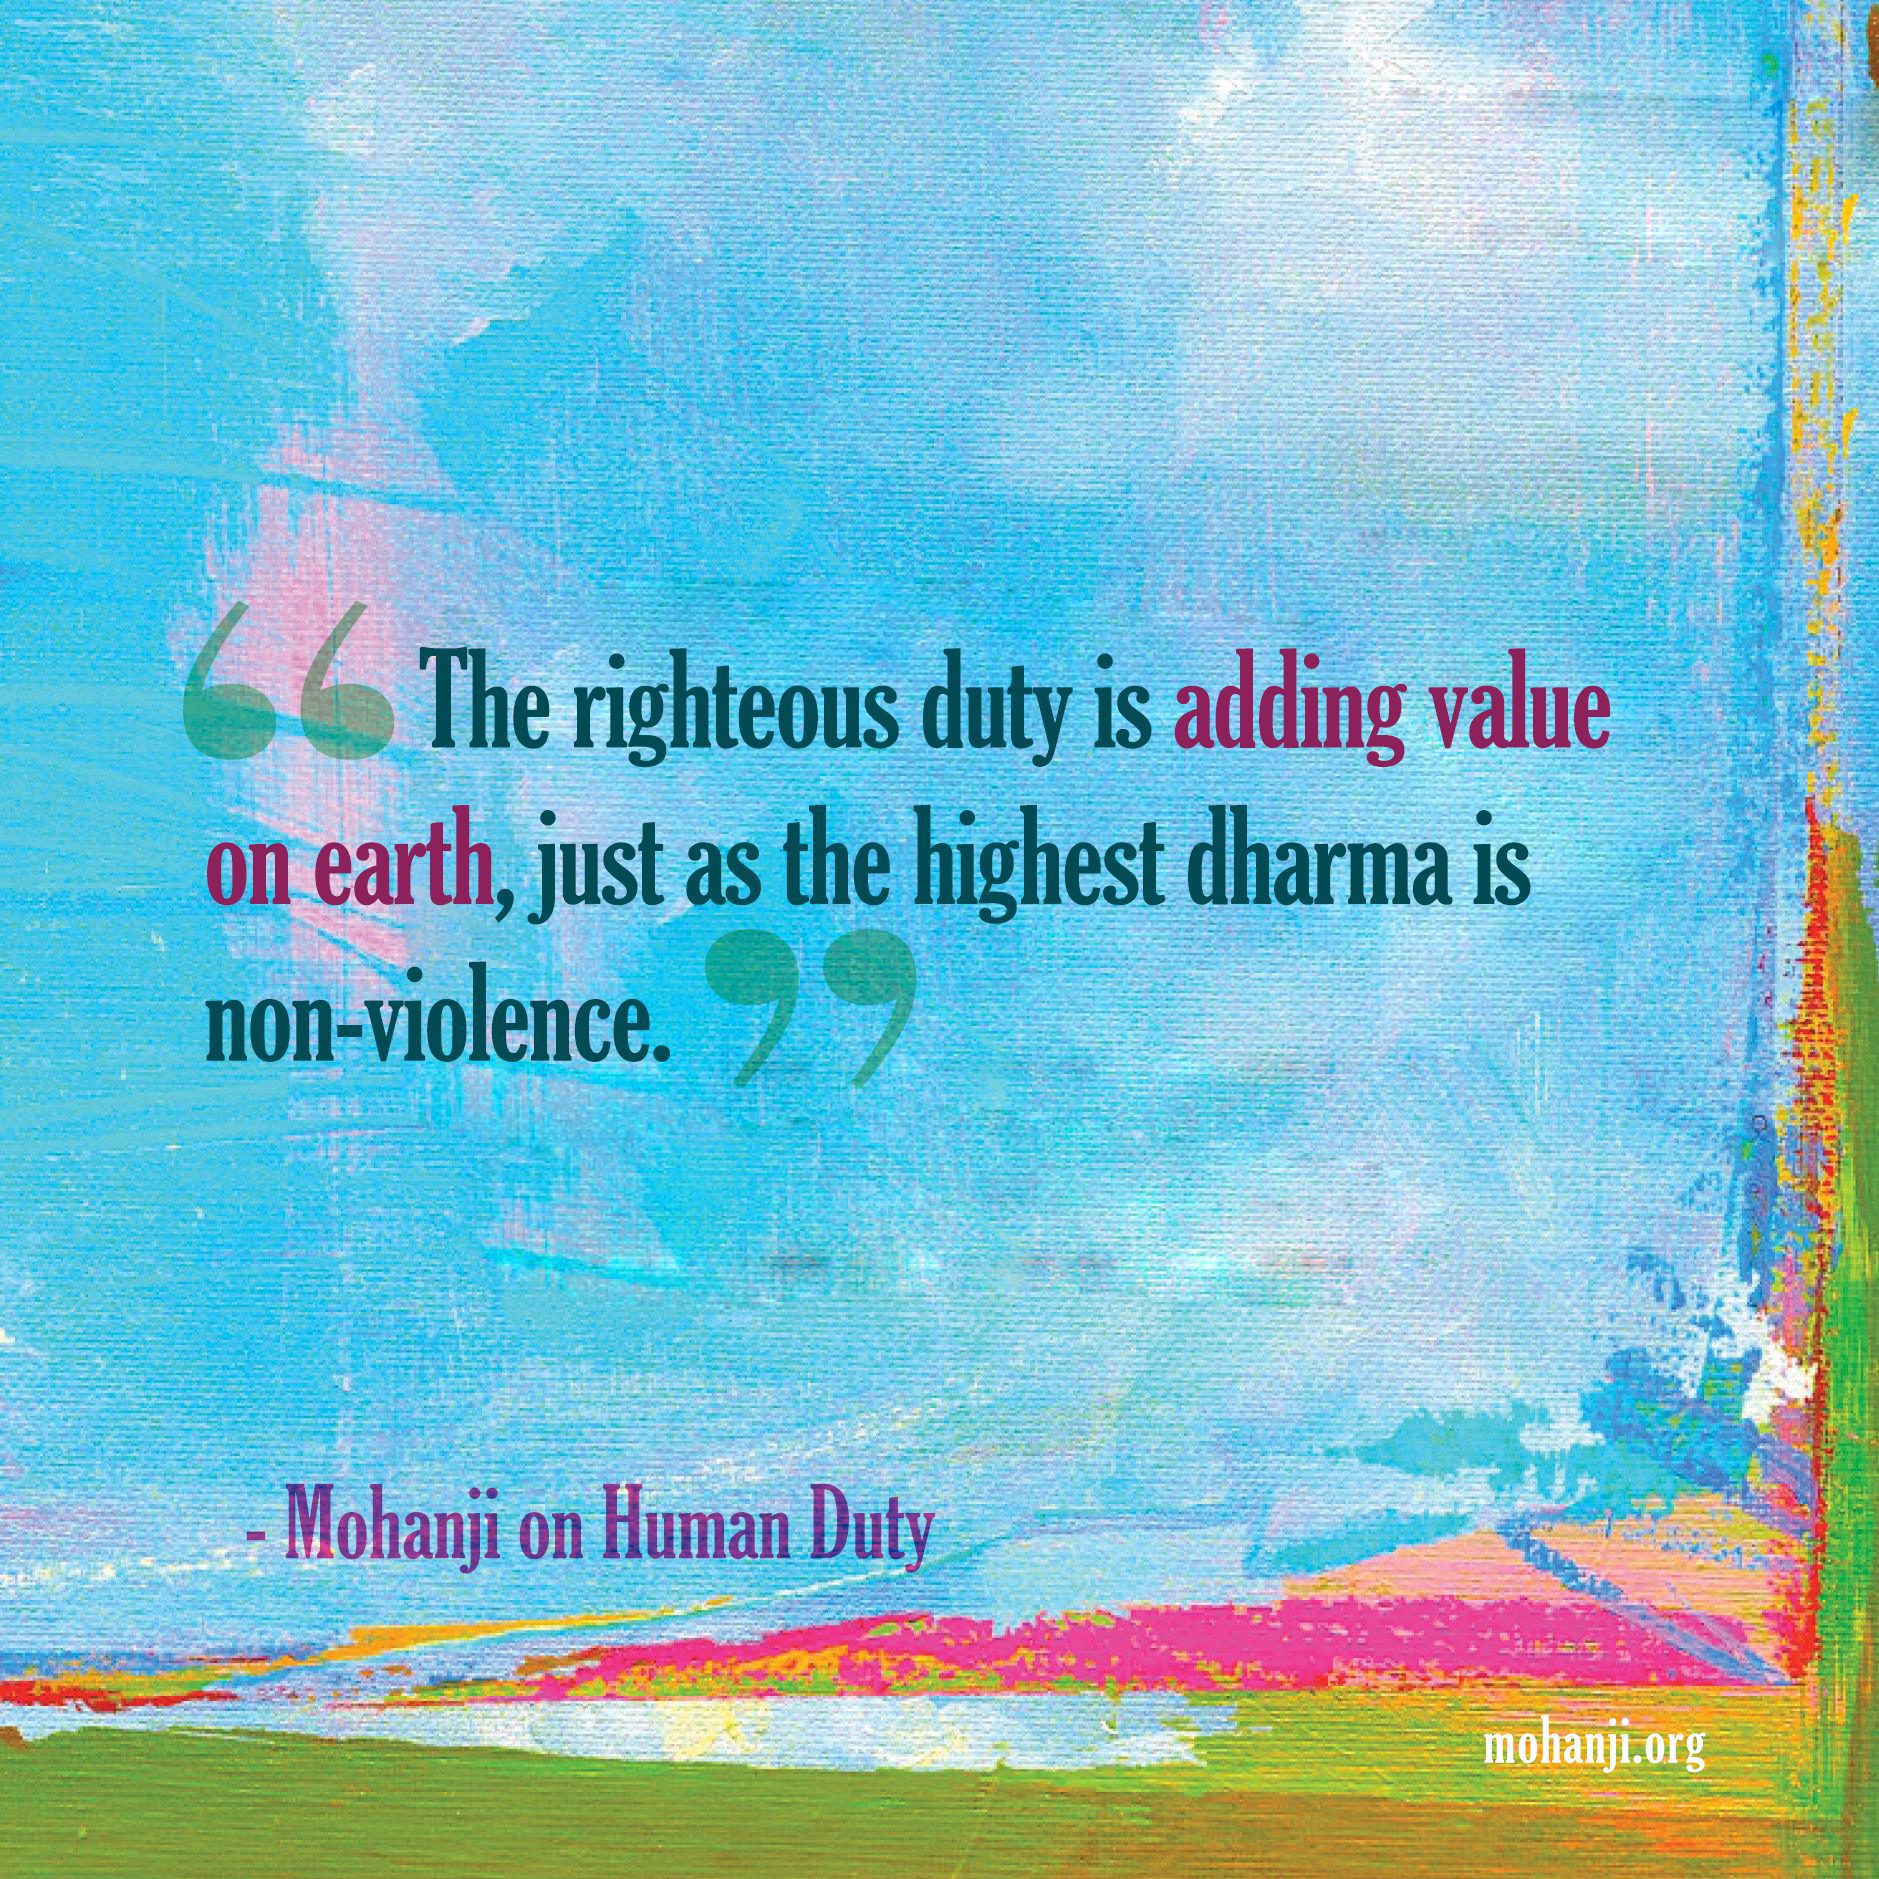 Mohanji quote - Human duty